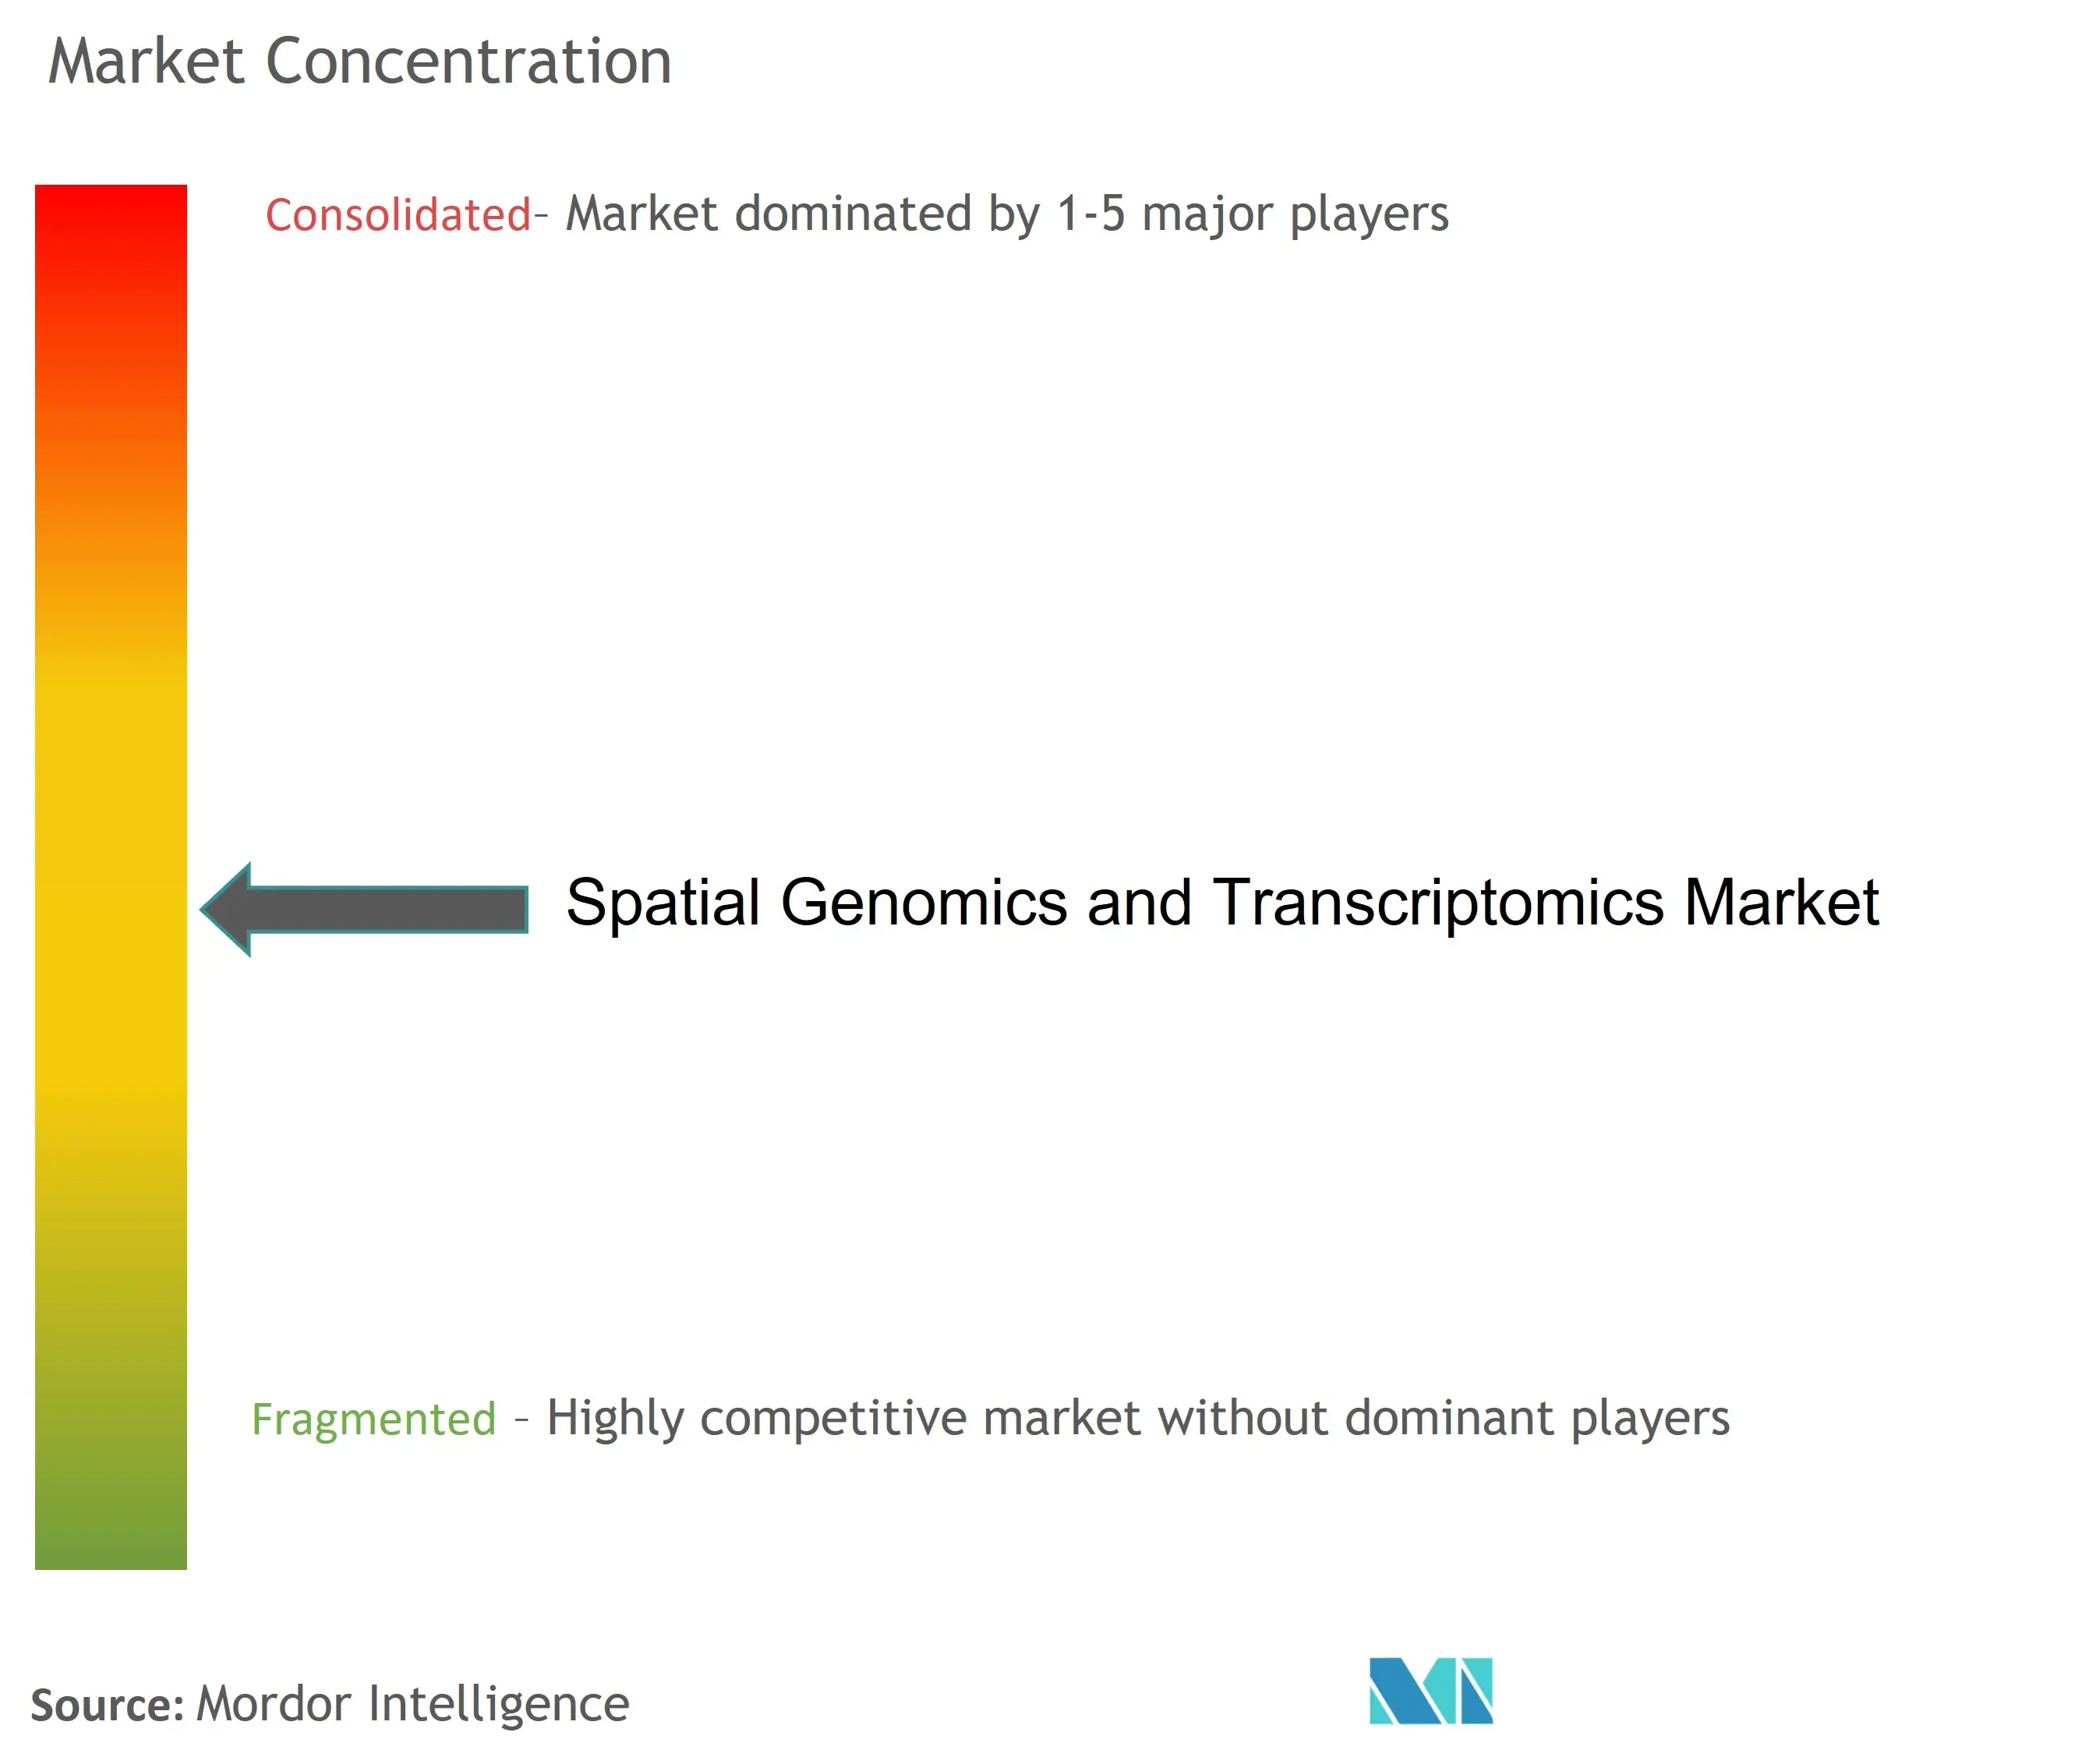 空間ゲノミクスとトランスクリプトミクス市場の集中度